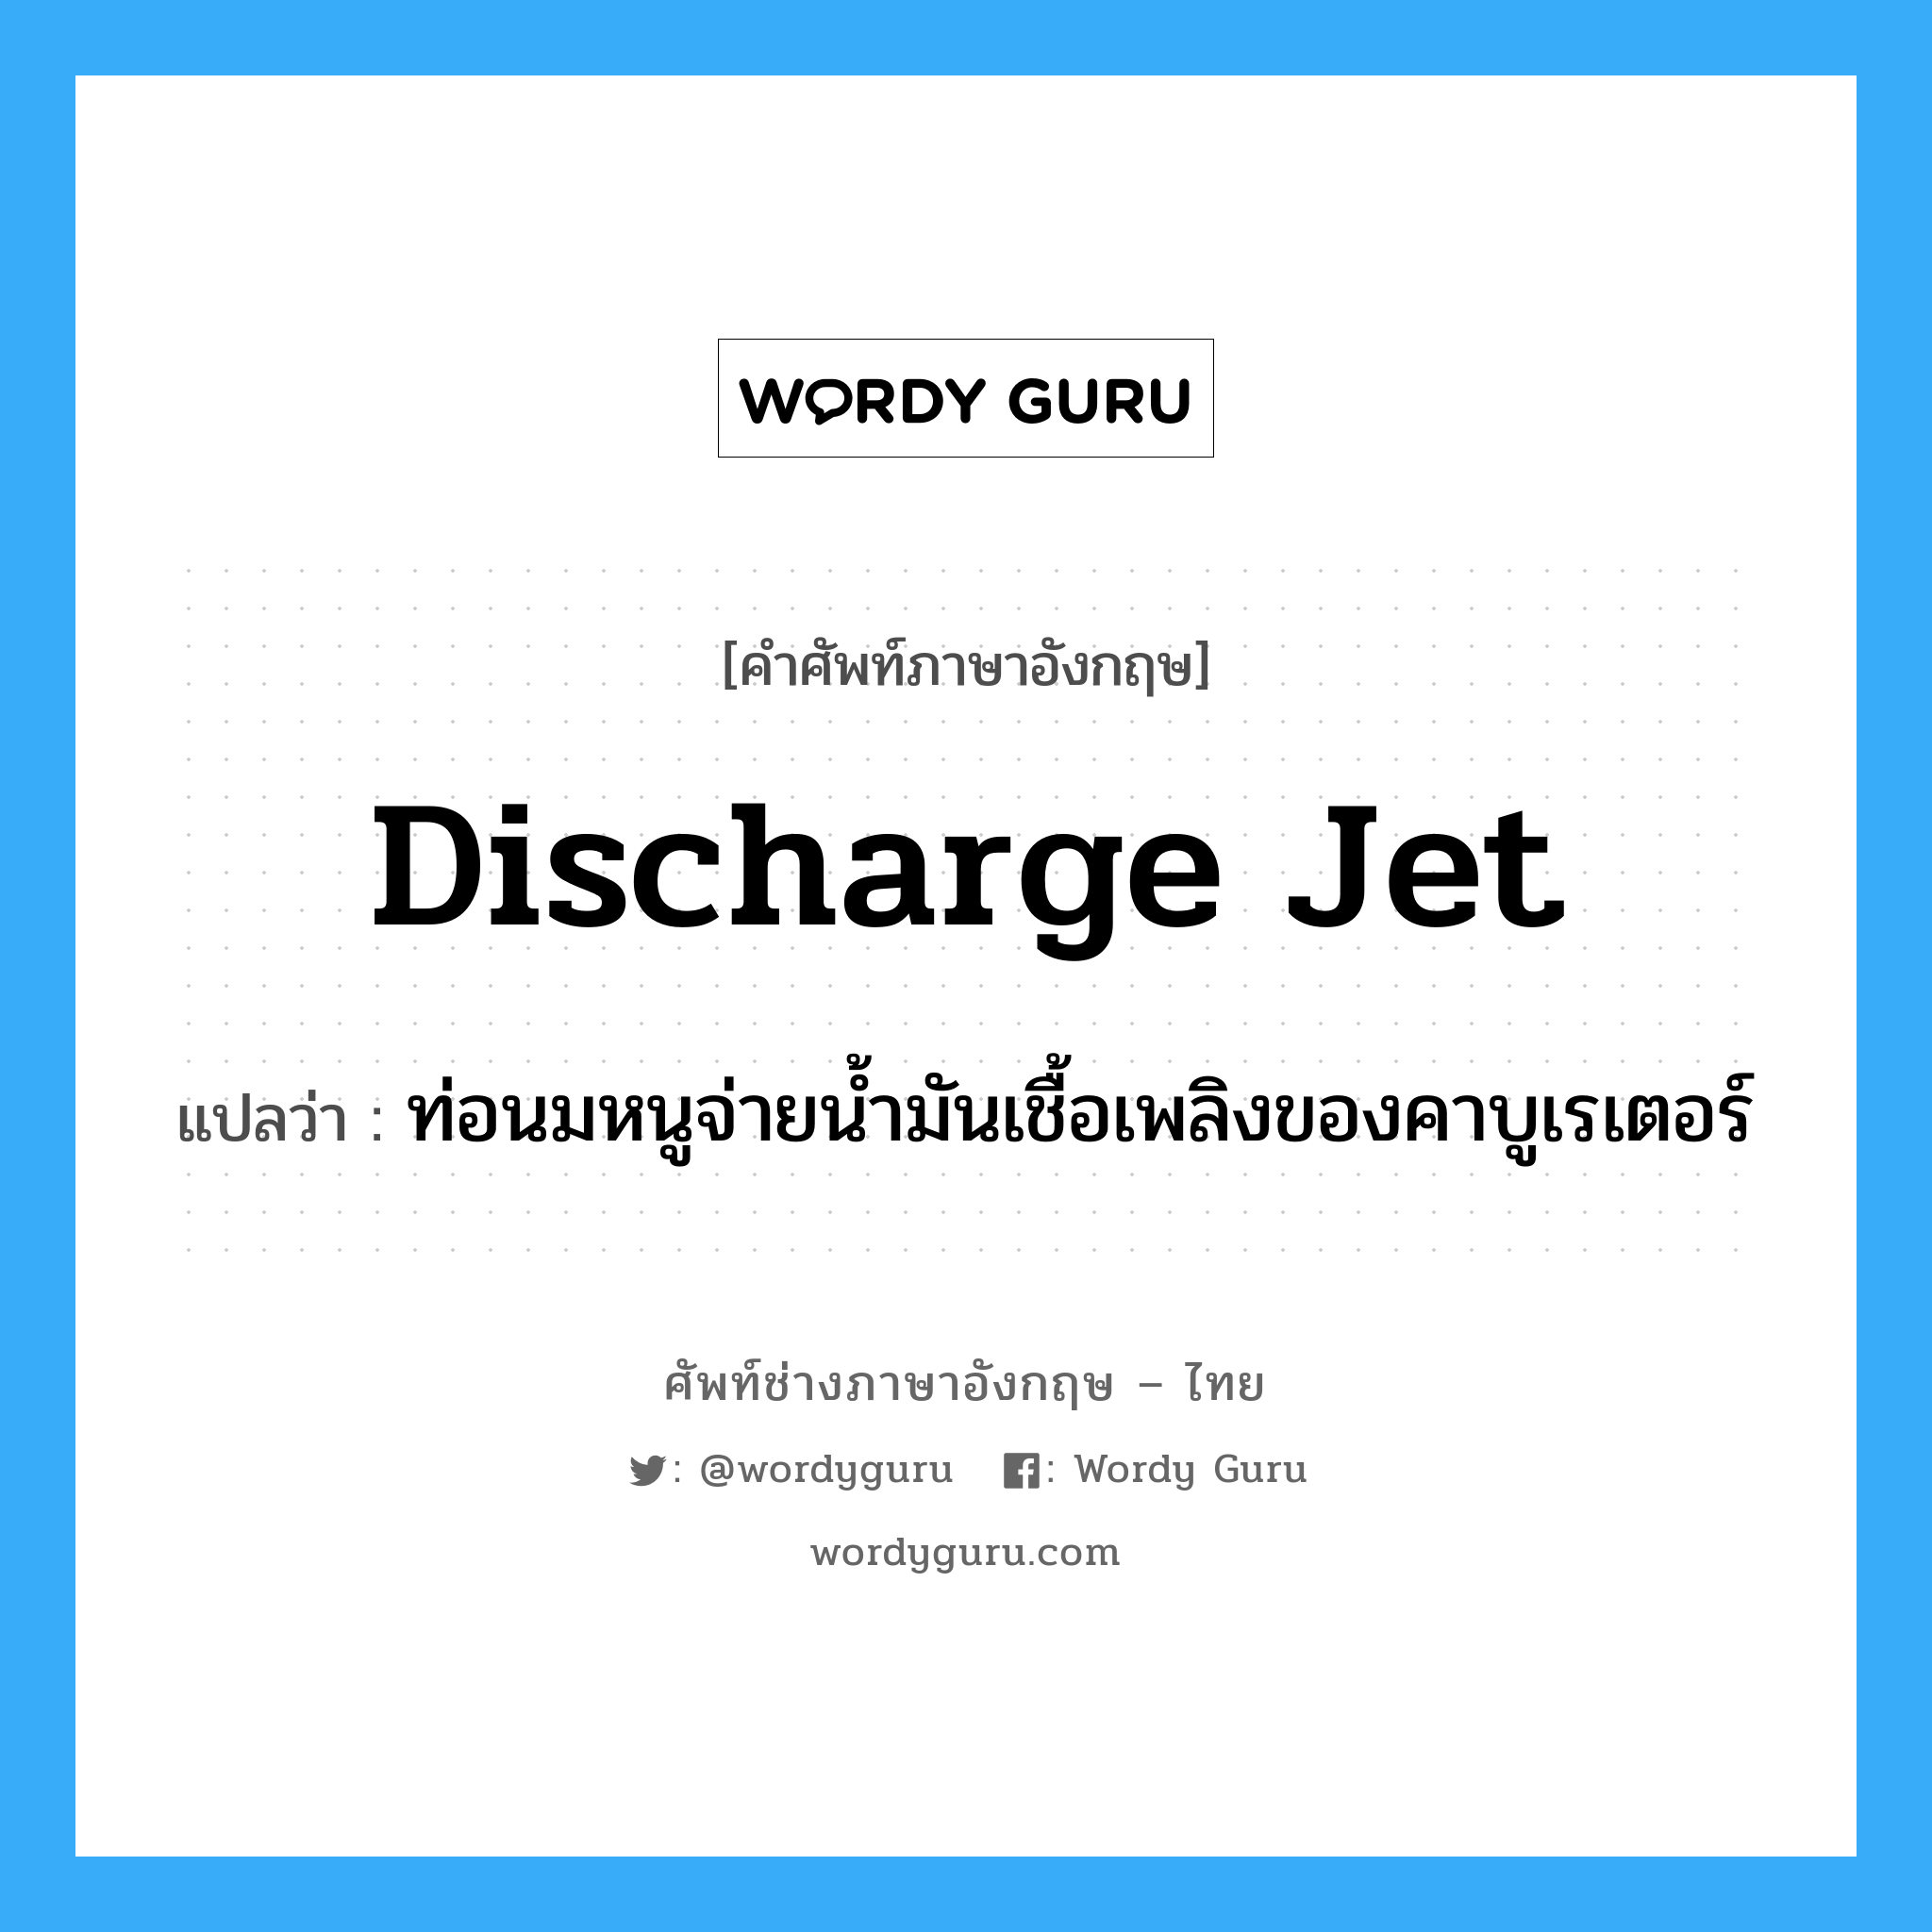 discharge jet แปลว่า?, คำศัพท์ช่างภาษาอังกฤษ - ไทย discharge jet คำศัพท์ภาษาอังกฤษ discharge jet แปลว่า ท่อนมหนูจ่ายน้ำมันเชื้อเพลิงของคาบูเรเตอร์